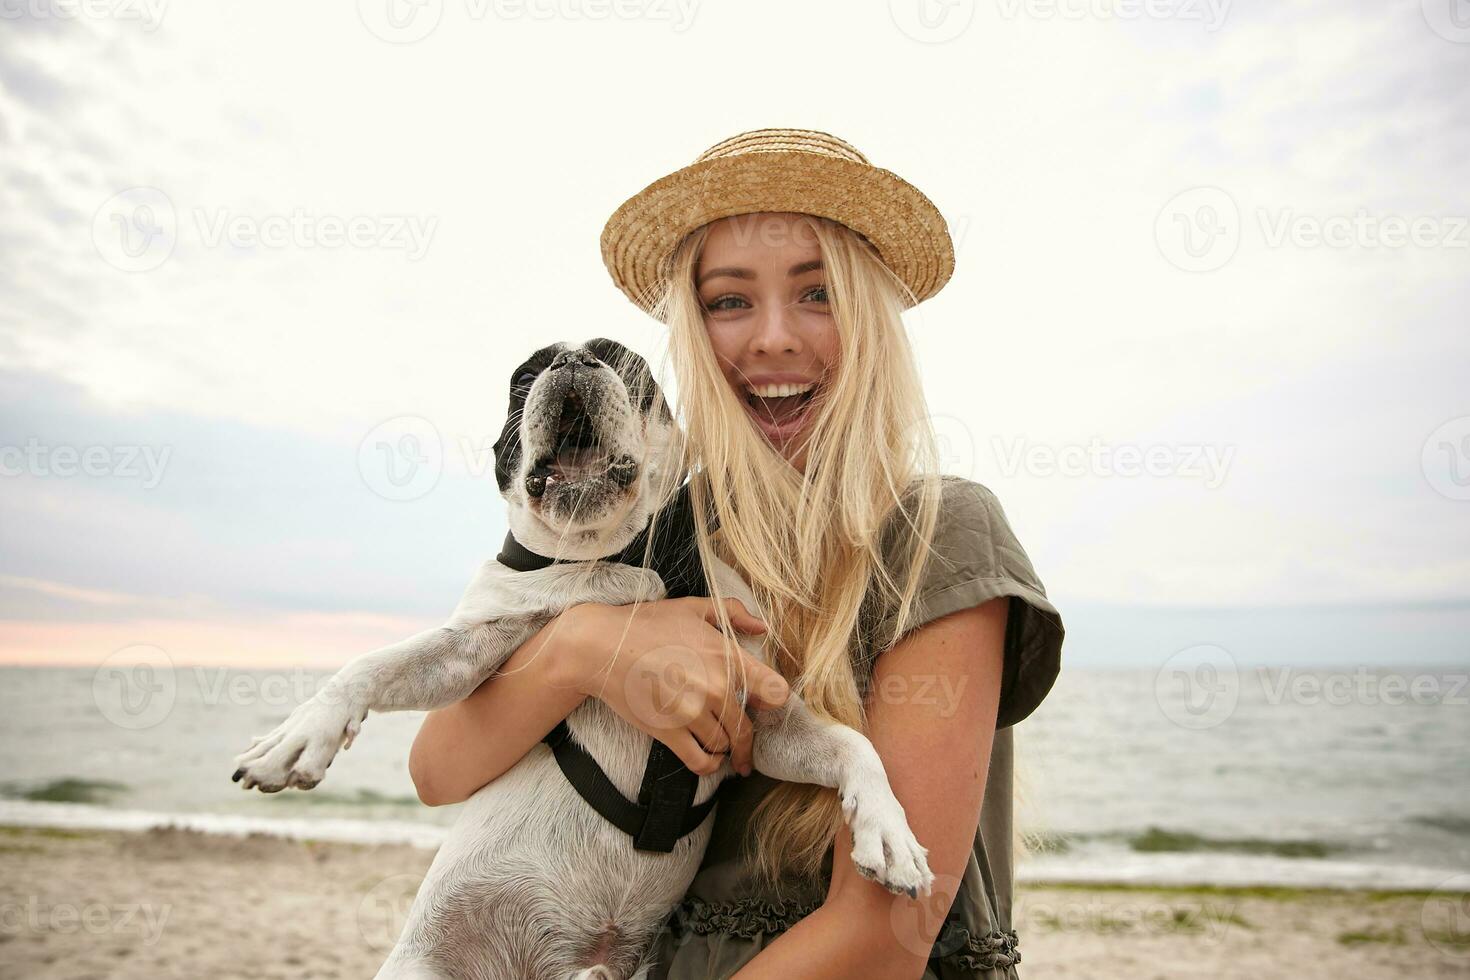 gracioso Disparo de hermosa joven mujer con largo rubia pelo vistiendo casual ropa, caminando a lo largo playa en nublado con su perro, mirando a cámara alegremente y sonriente extensamente foto